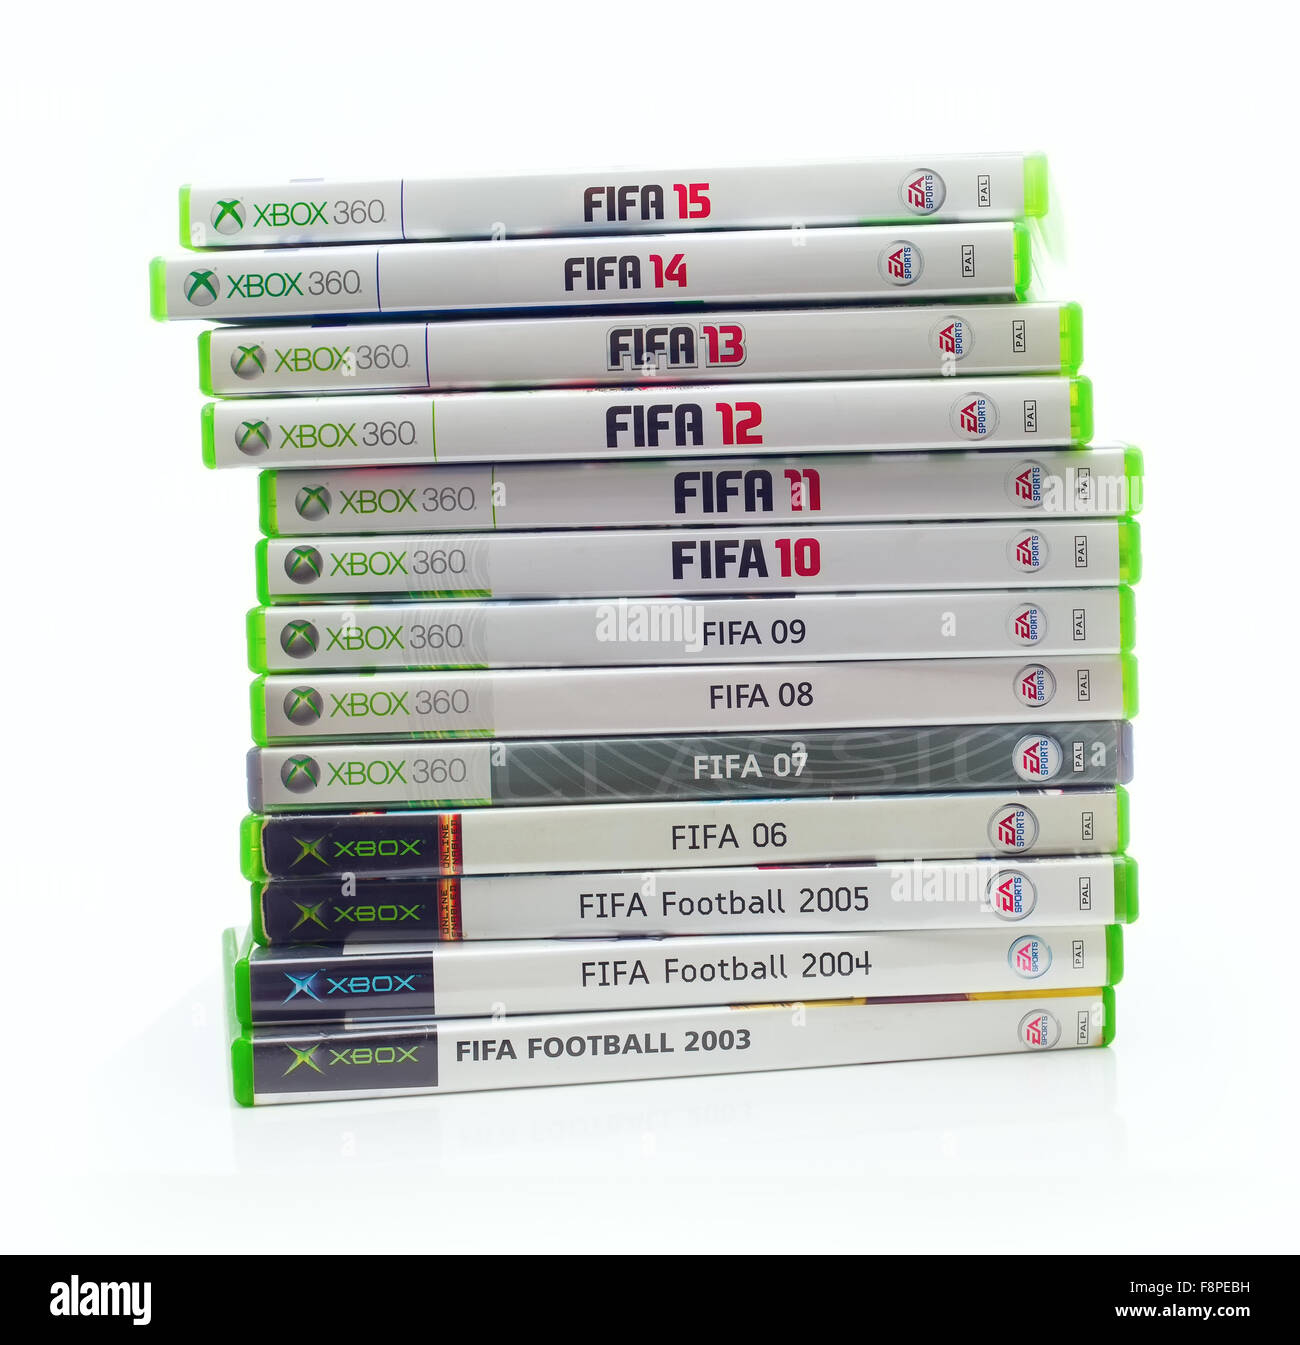 Collection de jeux de football FIFA par EA Sports à partir de 2003 jusqu'en 2015 pour la console XBox sur un fond blanc Banque D'Images